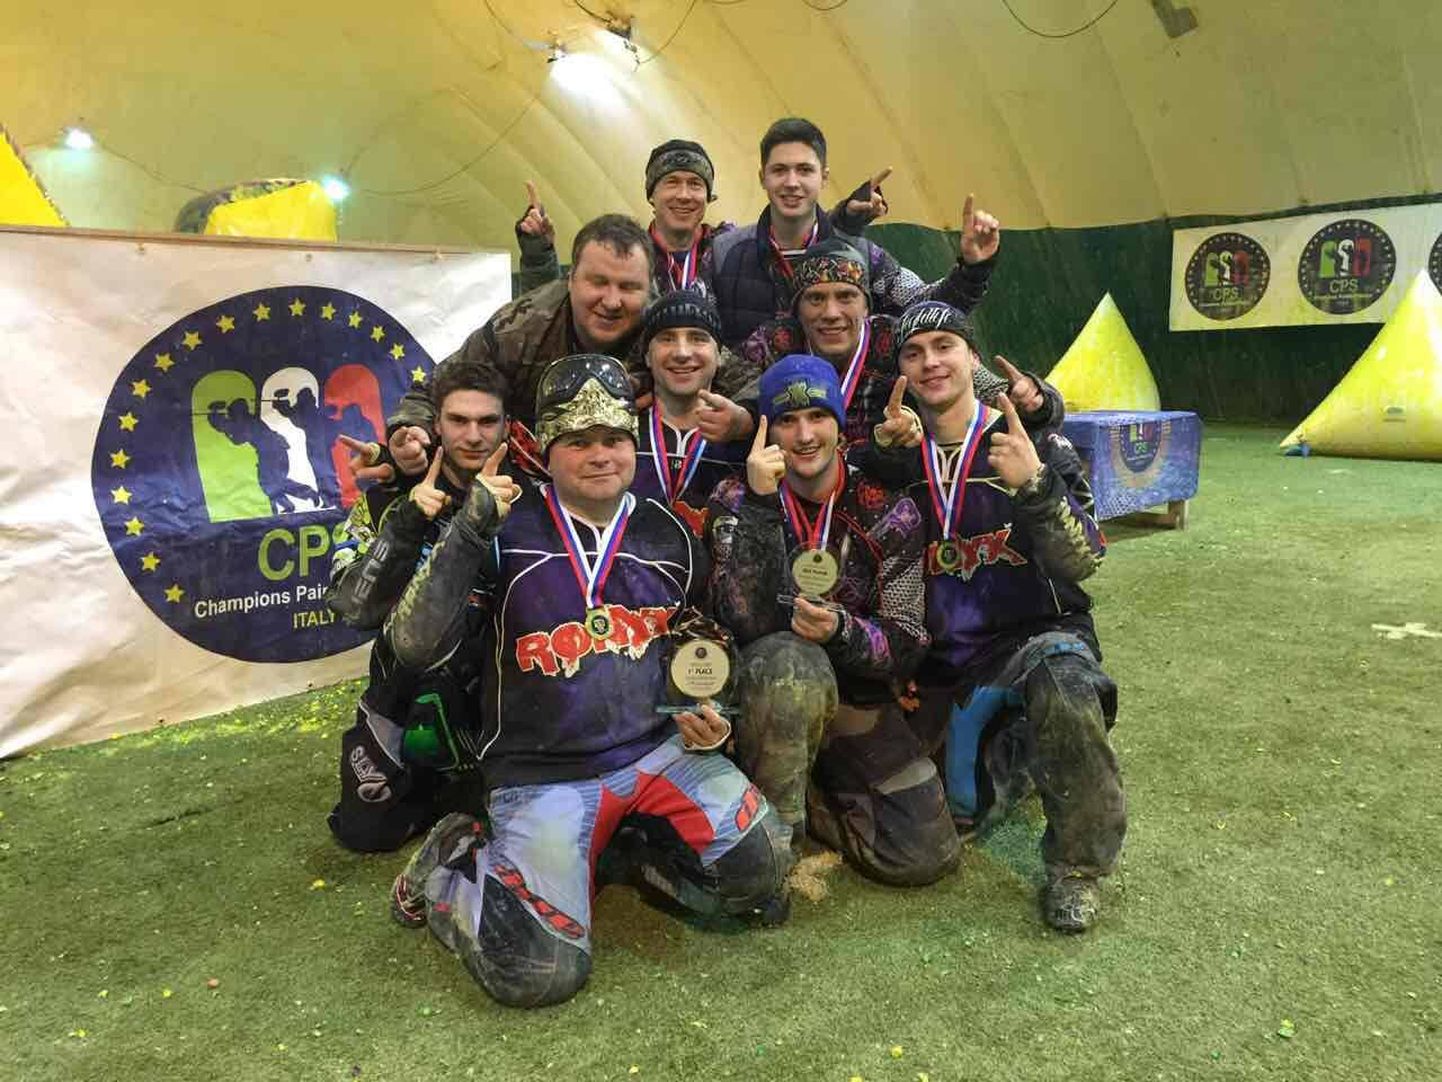 Команда RONYX победила на соревнованиях европейской Лиги Чемпионов (CPS) по пейнтболу.